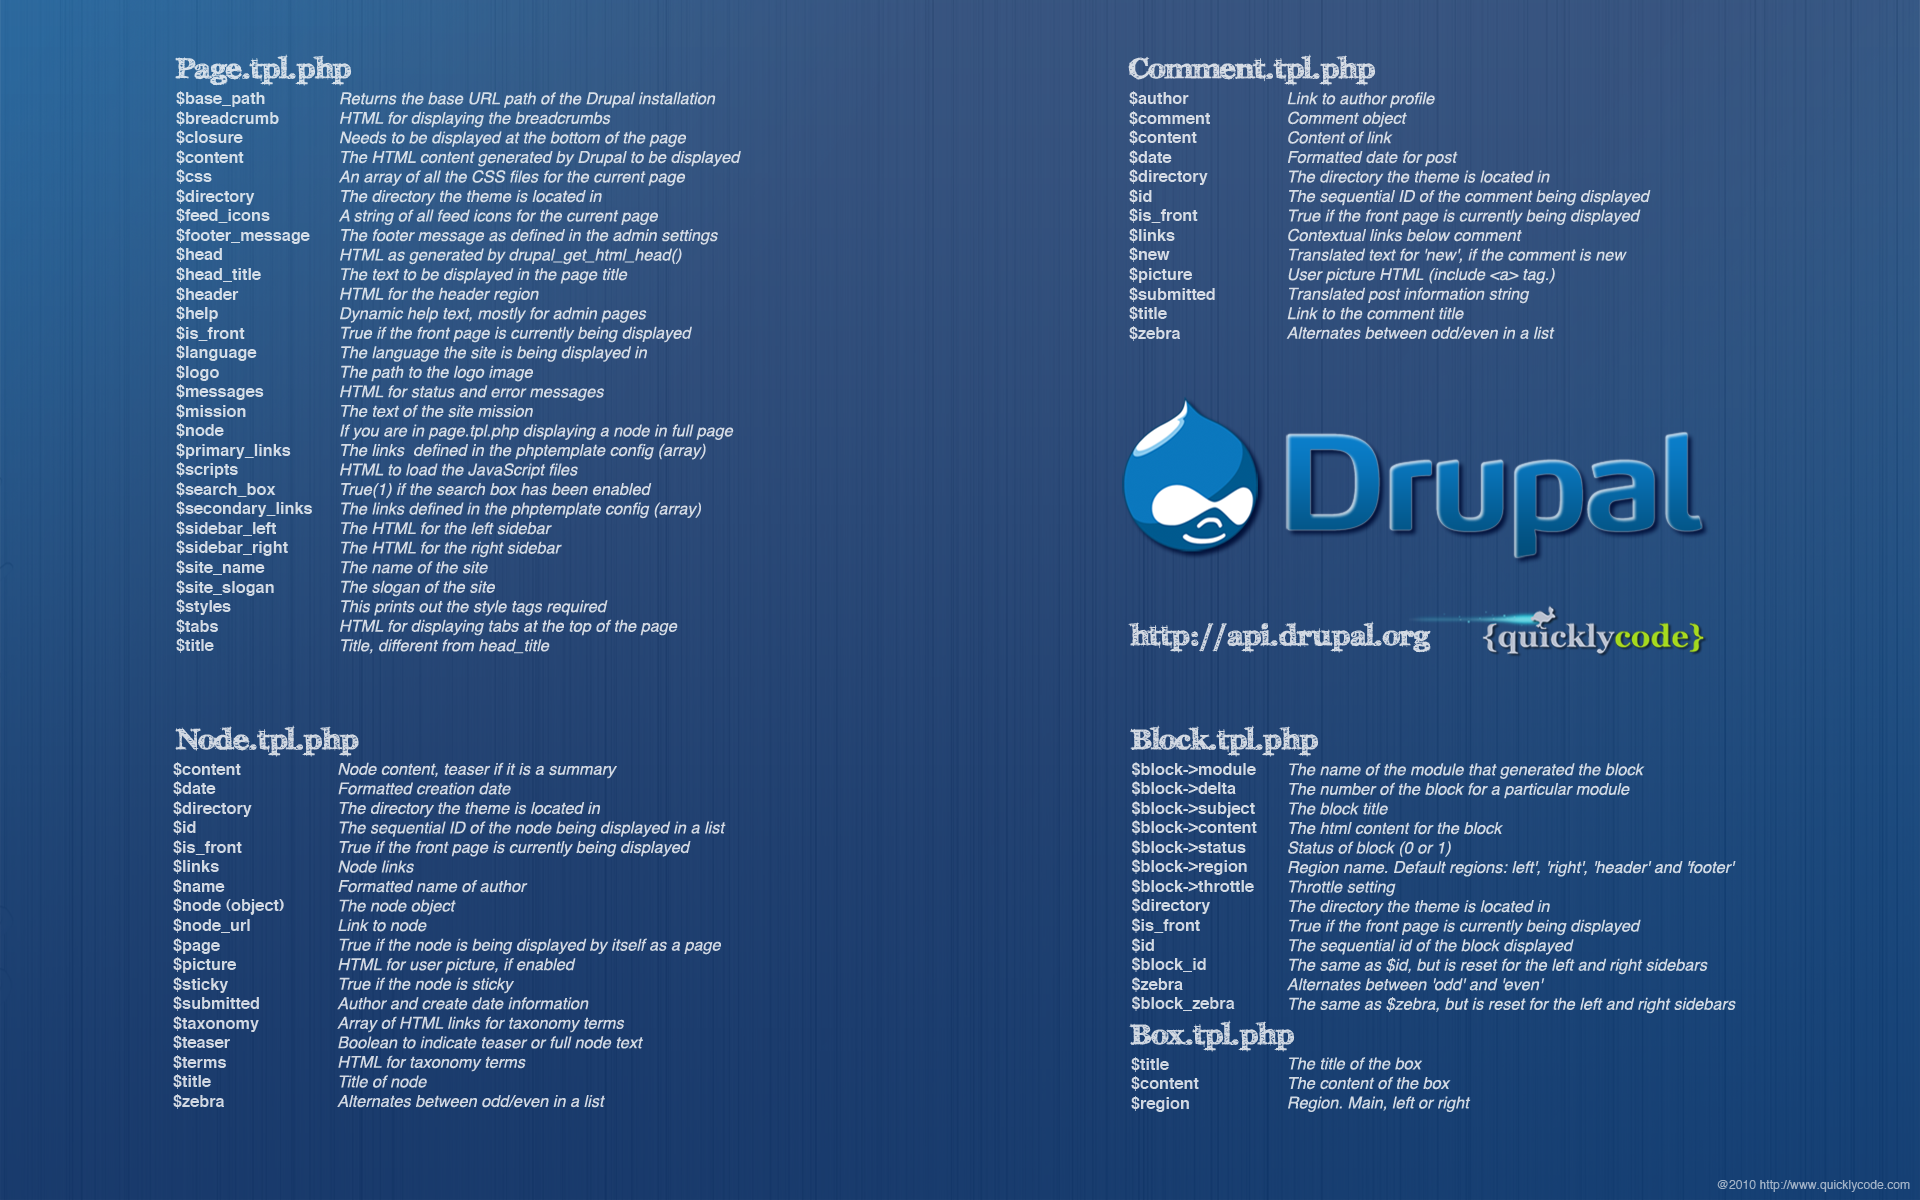 Drupal Cheat Sheet Wallpaper cung cấp bản tóm tắt những kỹ năng cần thiết khi lập trình với Drupal. Đây là một hình nền tuyệt vời cho máy tính của bạn nếu bạn đang muốn nâng cao kỹ năng lập trình của mình trong Drupal. Hãy xem hình ảnh để tìm hiểu thêm về các kỹ năng và kiến thức cần thiết cho Drupal.